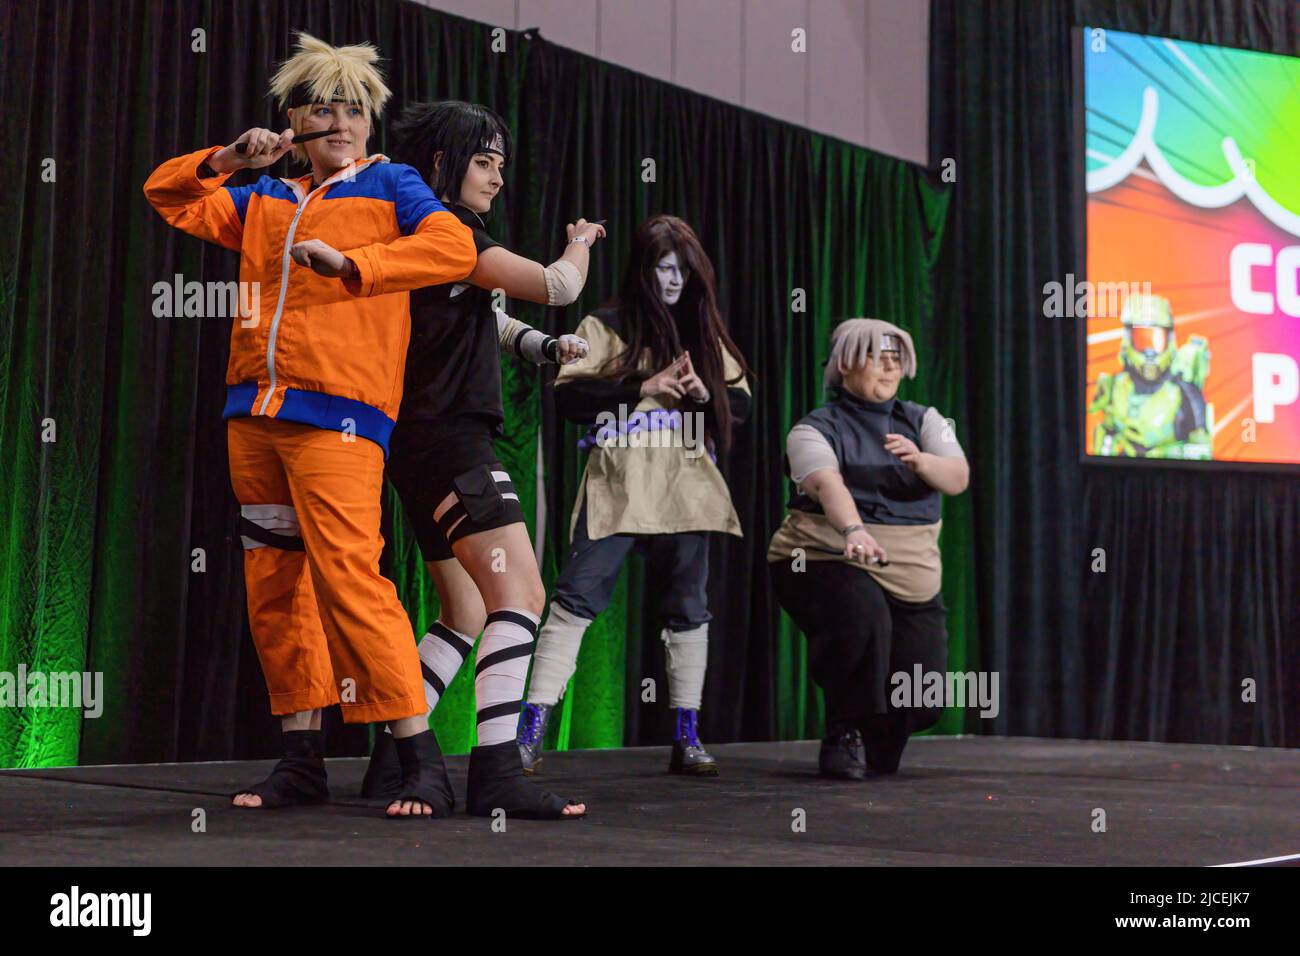 Naruto cosplay immagini e fotografie stock ad alta risoluzione - Alamy